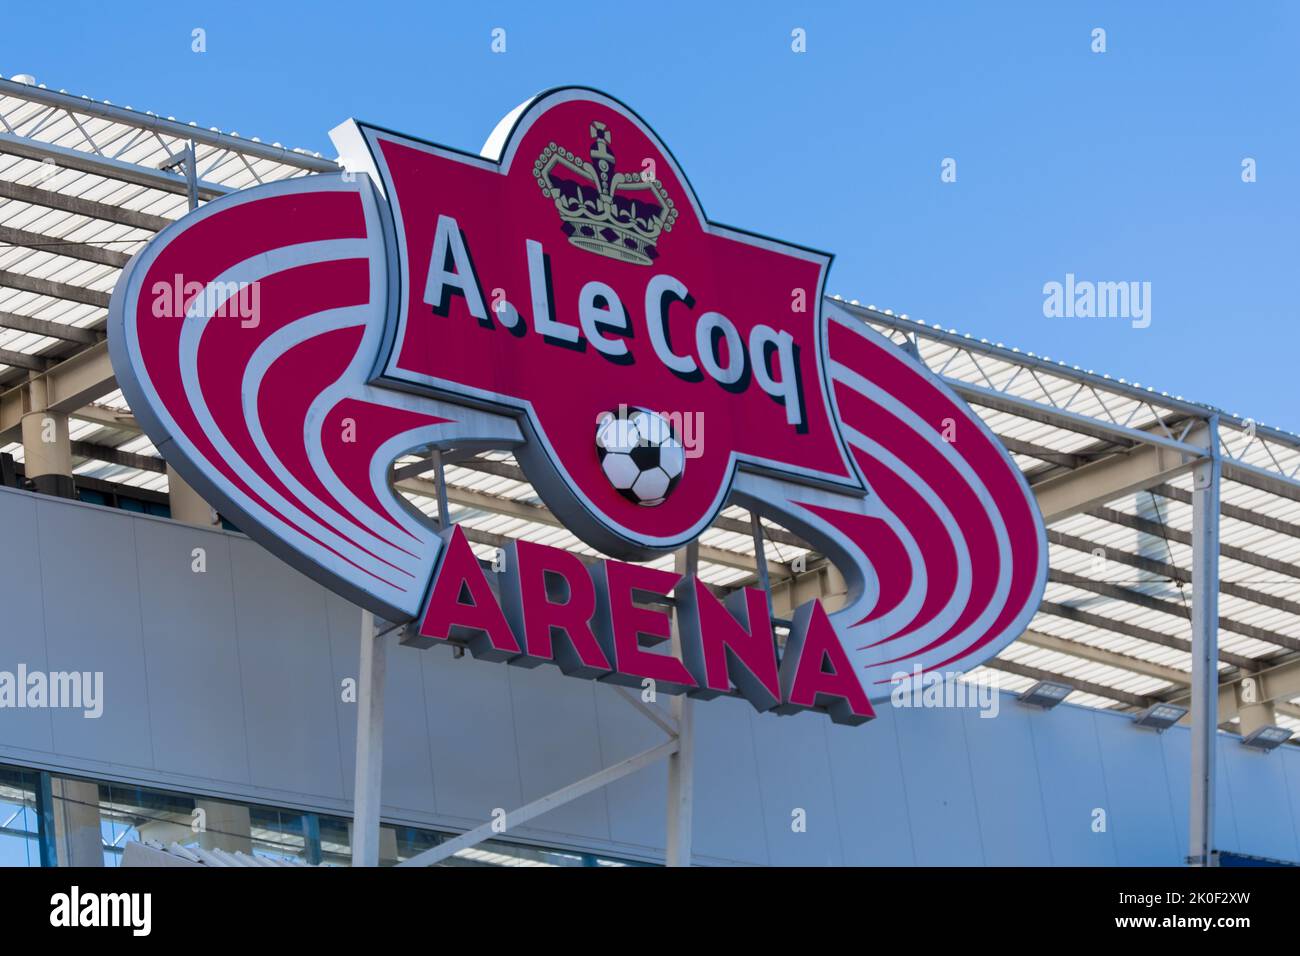 Tallinn, Estonia - September 10, 2022: A. Le Coq Arena - largest football stadium in Tallinn. Stock Photo